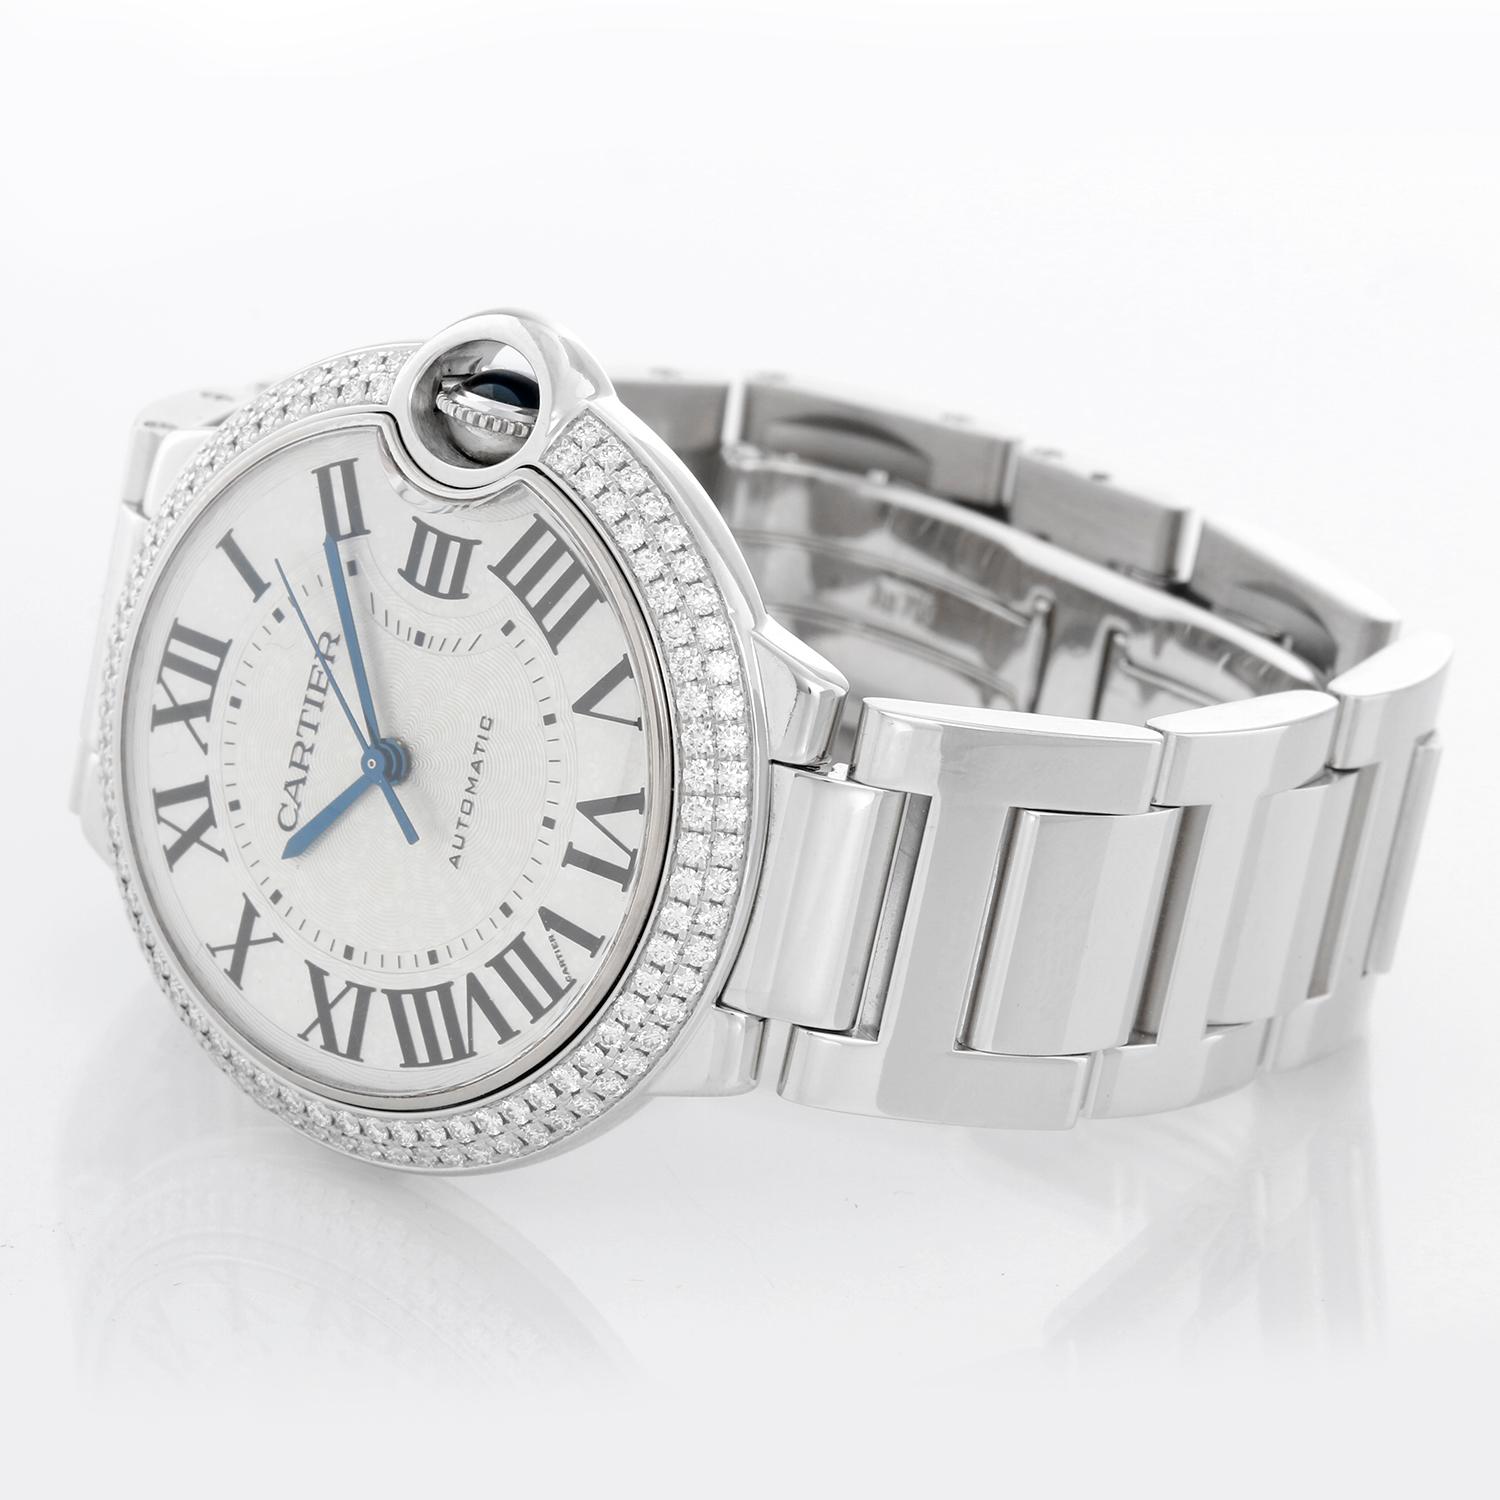 Cartier Ballon Bleu Midsize 18k White Gold & Diamond Watch WE9006Z3 3004 - Remontage automatique. boîtier en or blanc 18k avec lunette en diamant d'usine (36mm de diamètre). Cadran argenté guilloché avec chiffres romains noirs. bracelet Cartier en